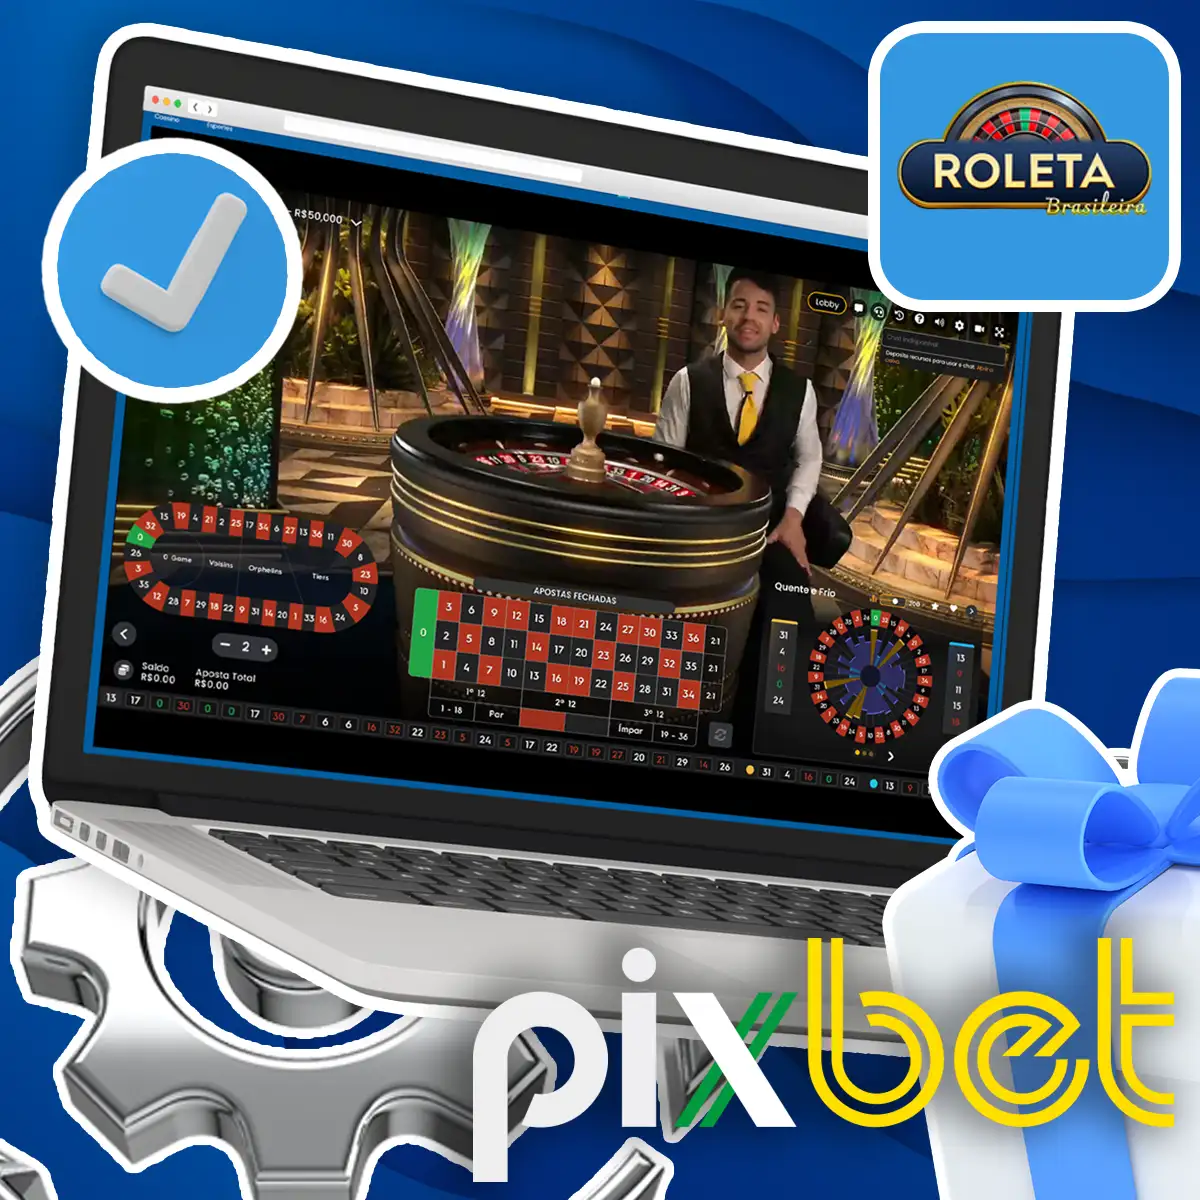 Opções disponíveis para apostar na Pixbet Roulette